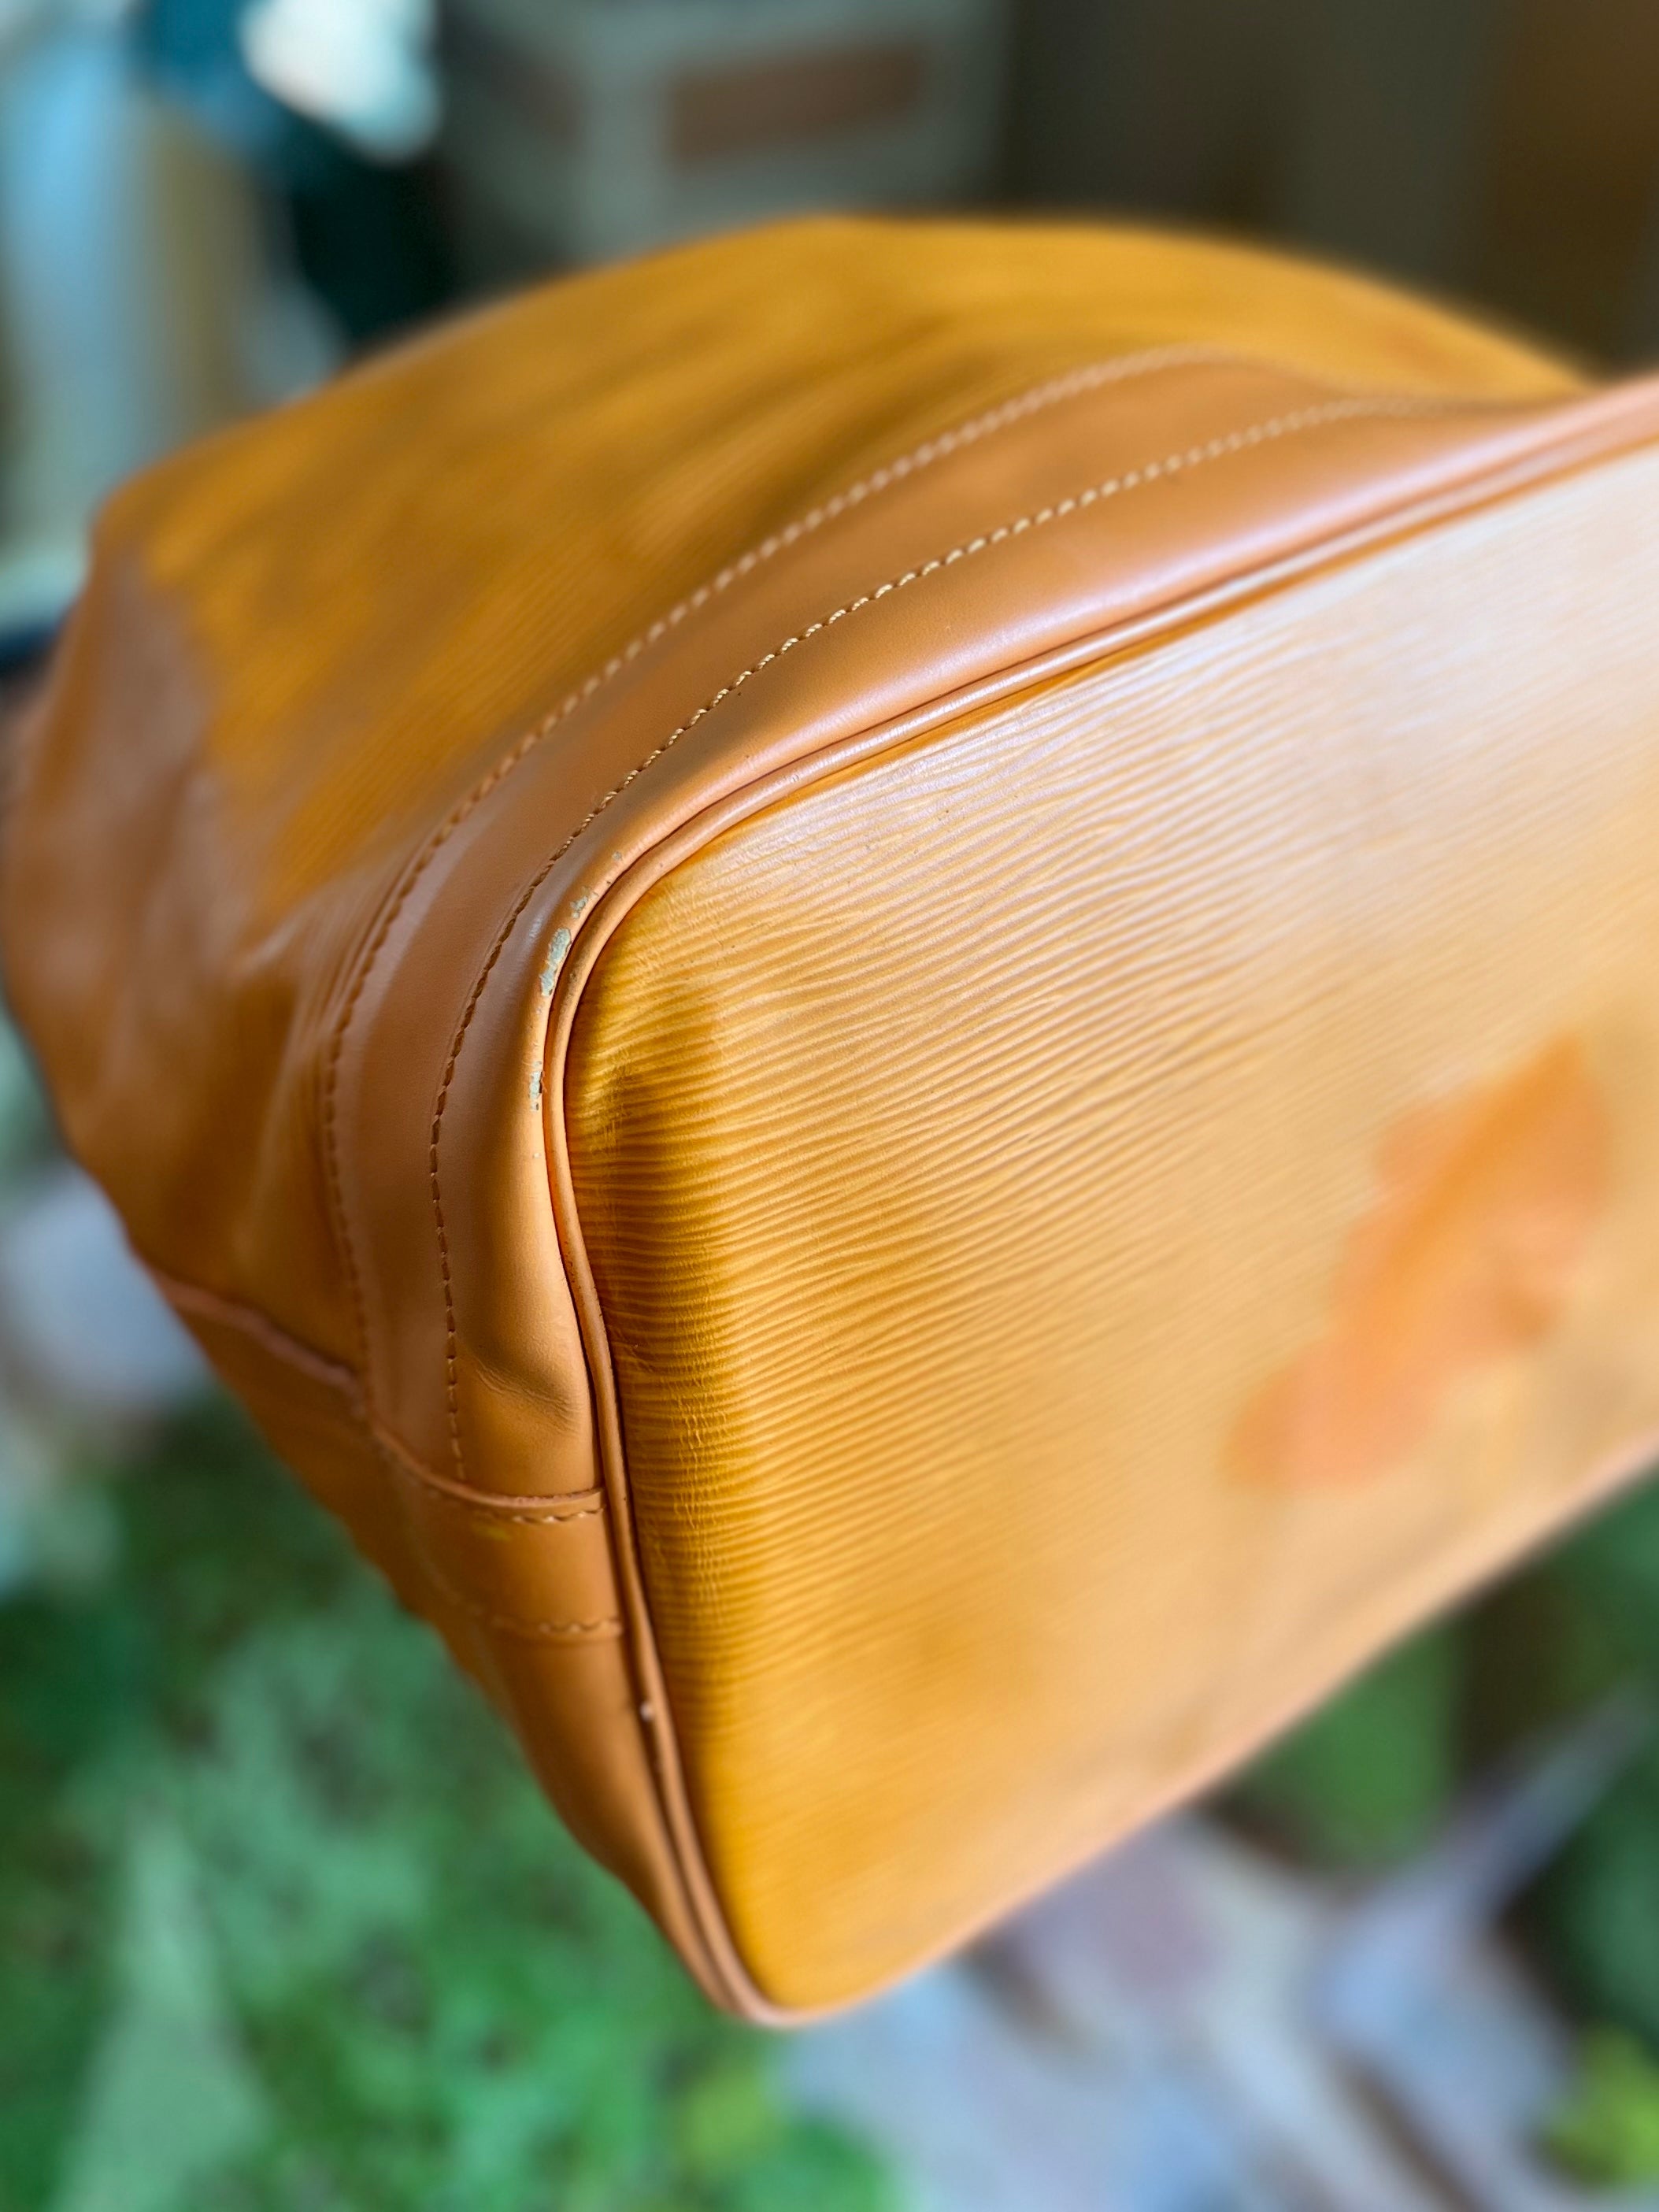 LOUIS VUITTON Orange Epi Leather Noe Bucket Bag - 14"x10"x7"